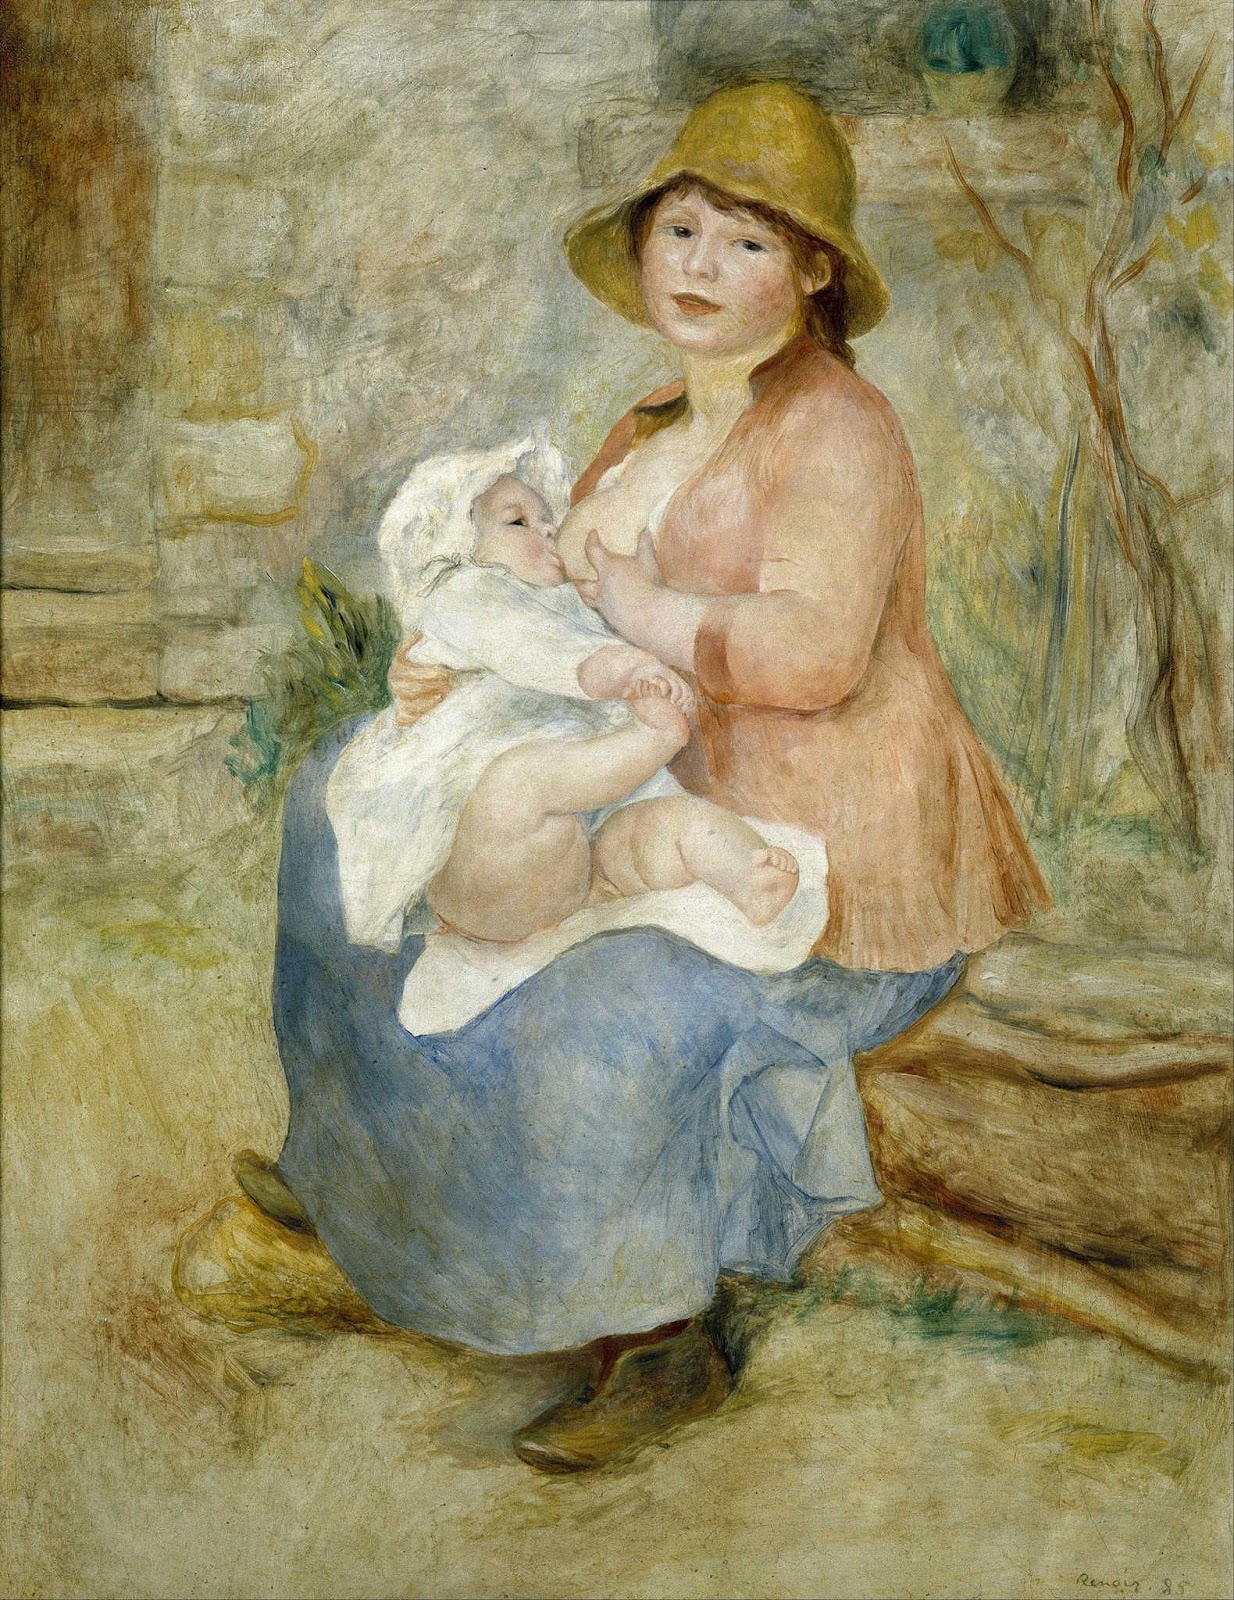 Pierre+Auguste+Renoir-1841-1-19 (991).jpg